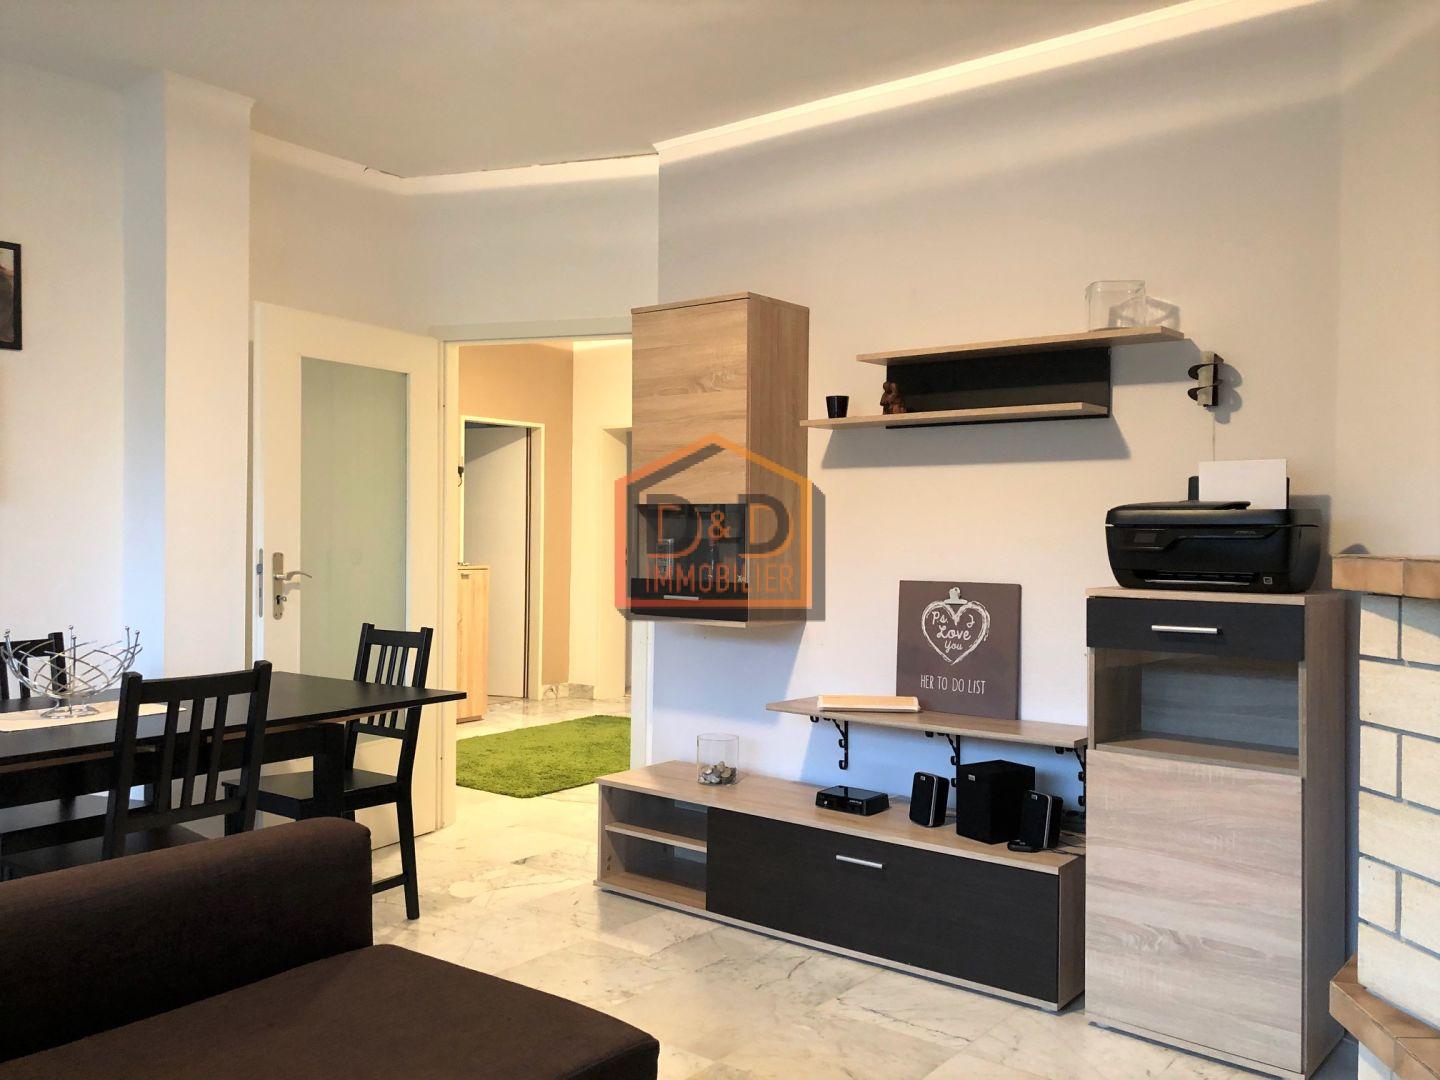 Appartement à Petange, 75 m², 2 chambres, 1 salle de bain, 1 garage, 1 200 €/mois